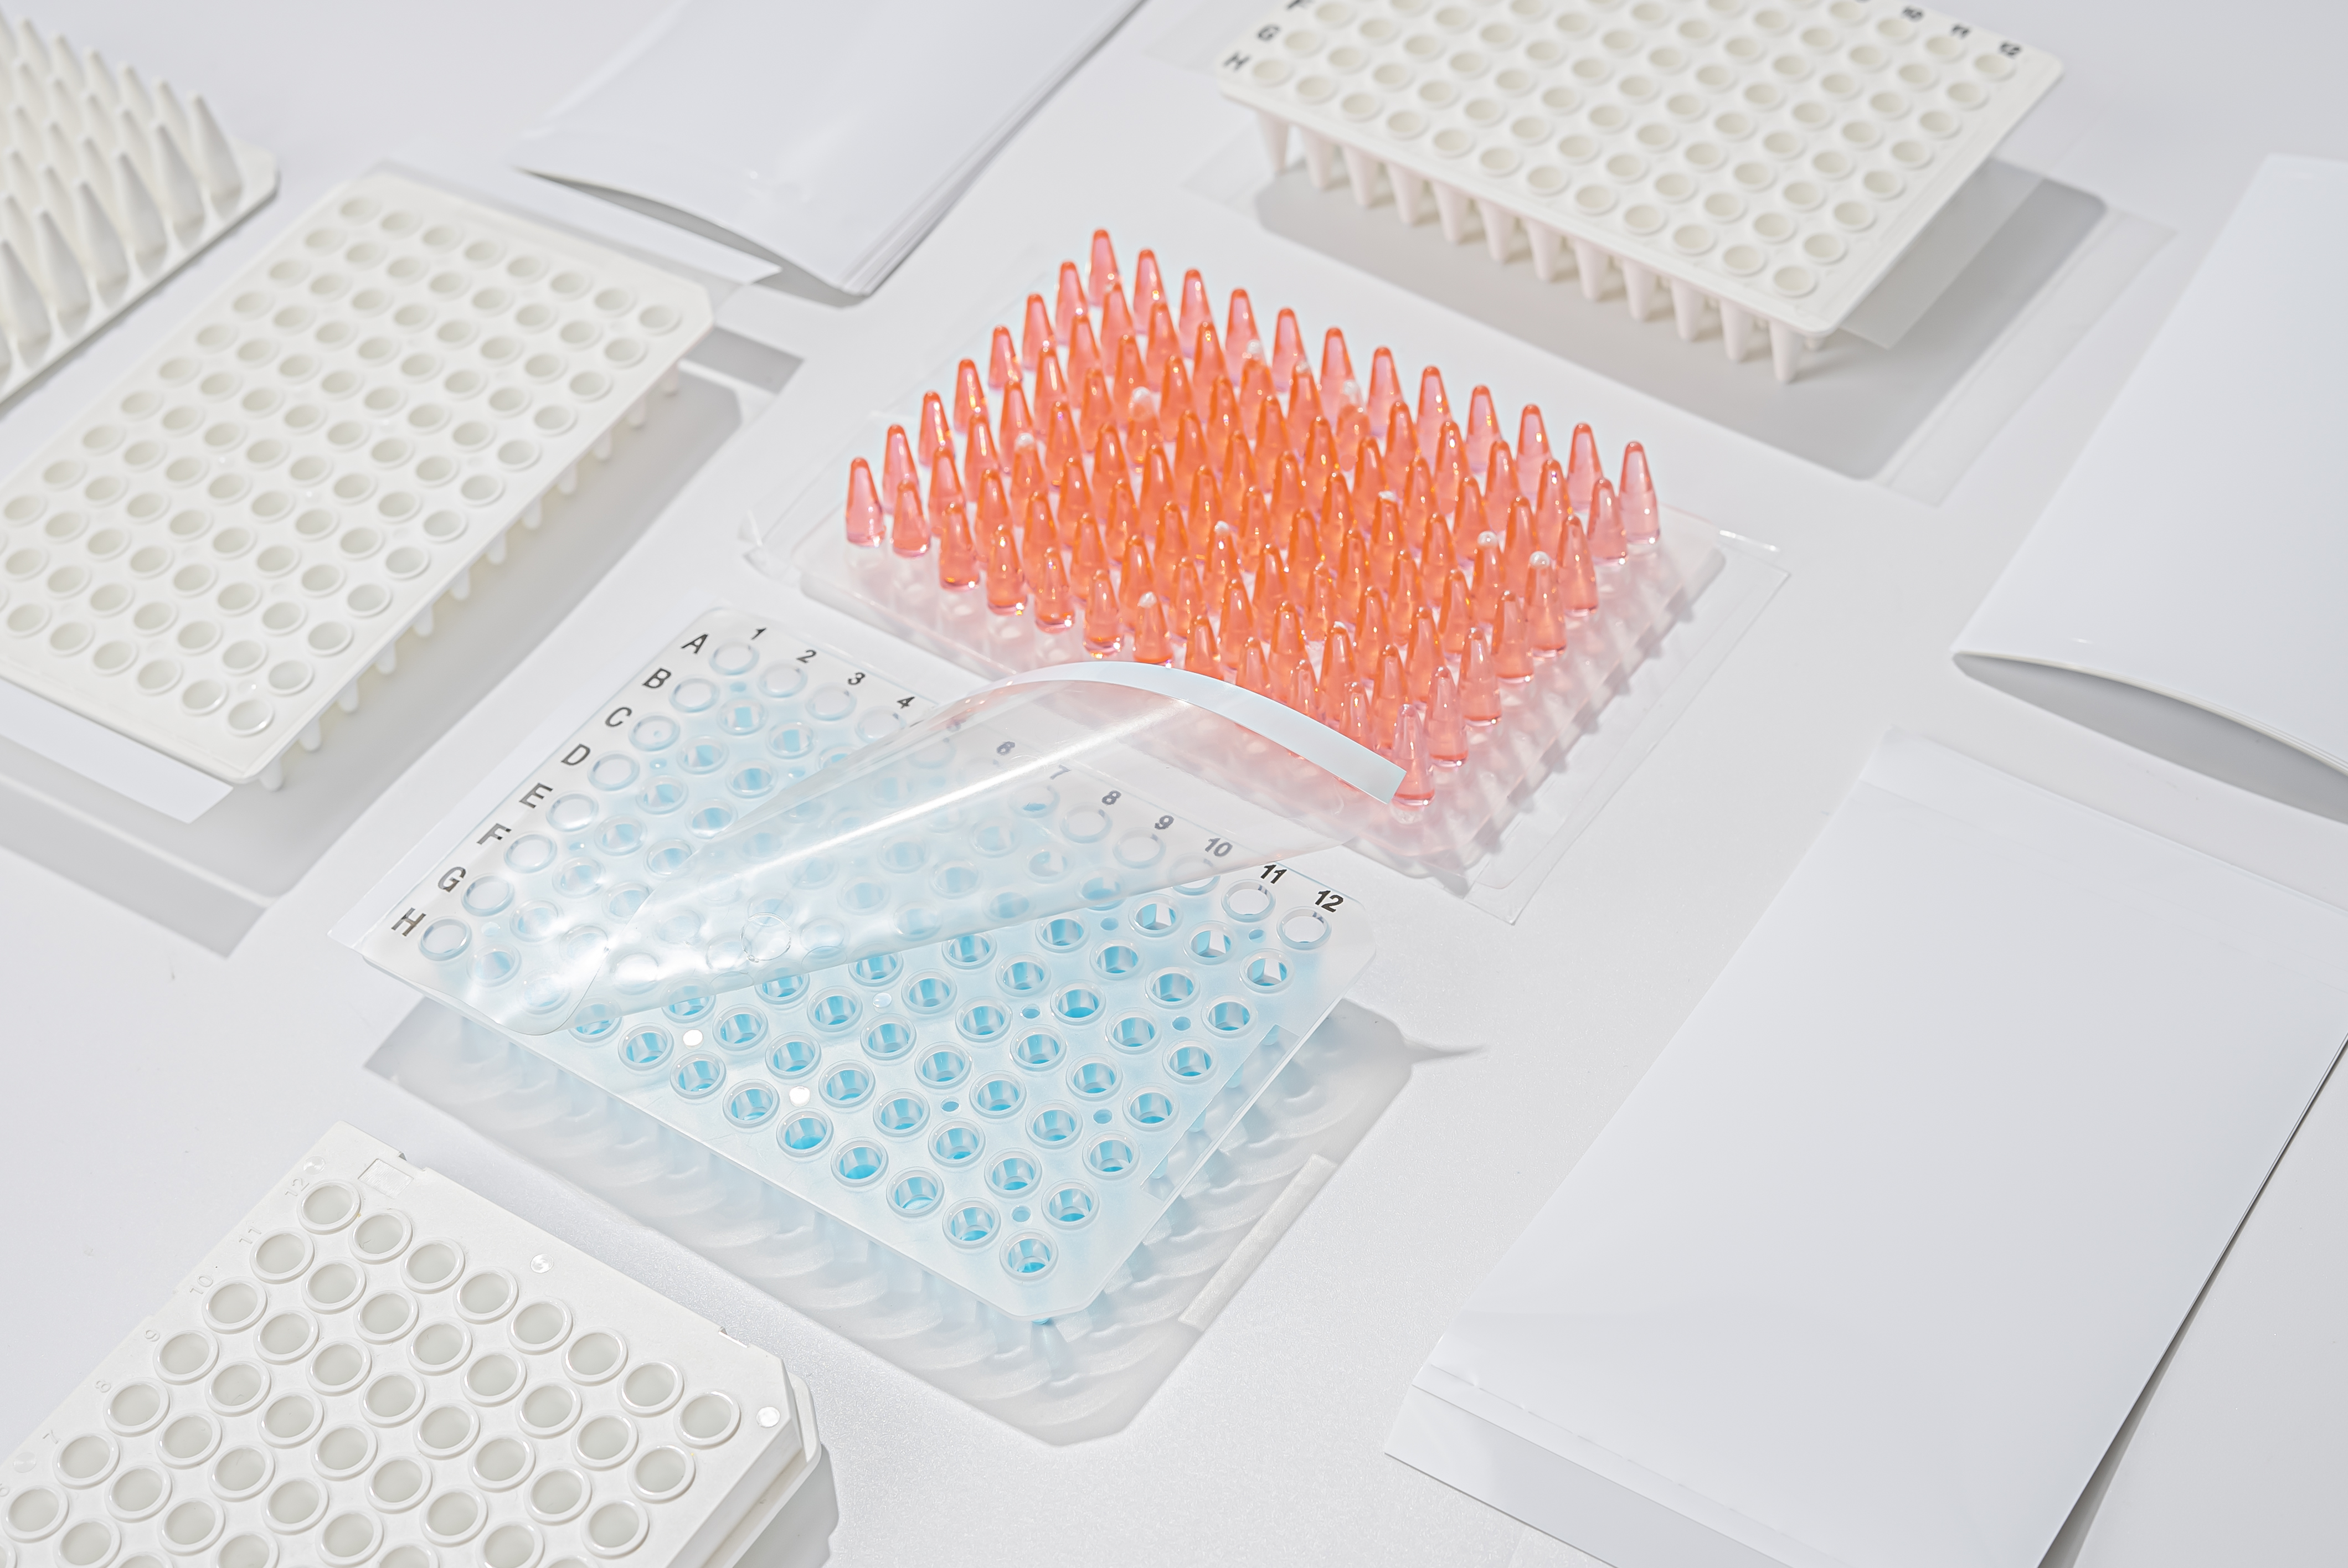 Kiat sederhana tentang cara menghindari kontaminasi selama PCR